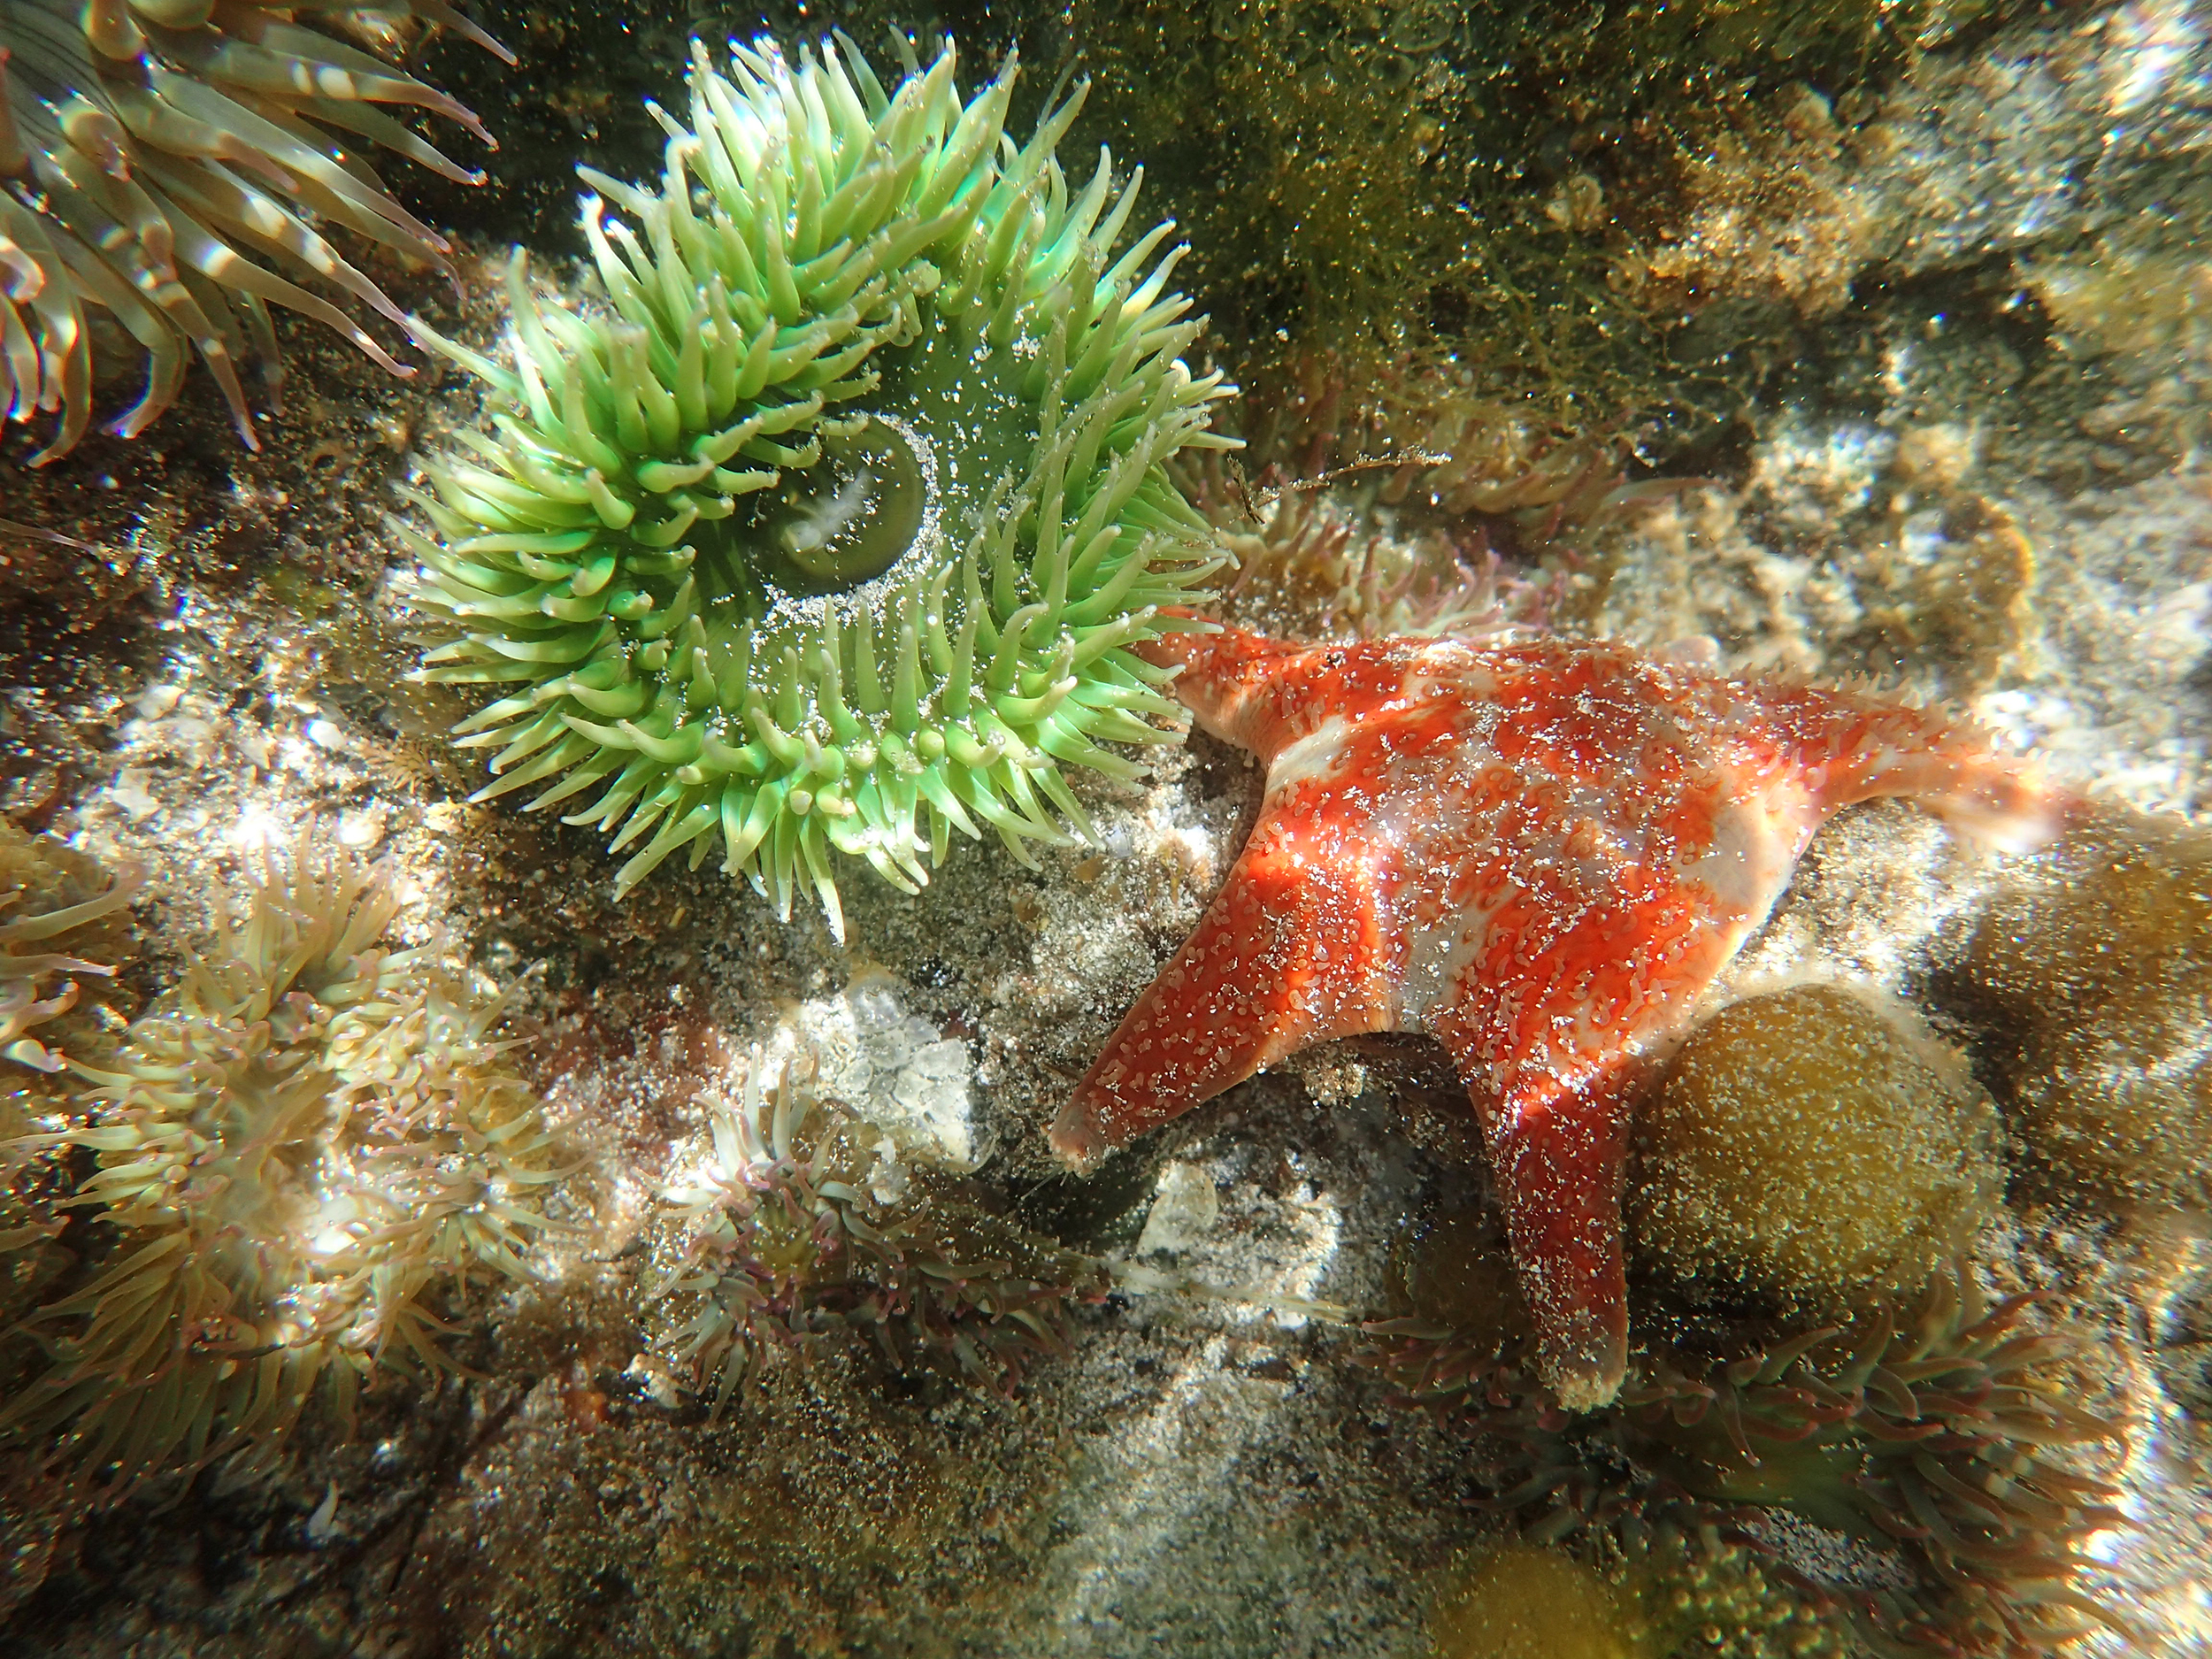 Green Anemone and Orange Starfish Clinging to Rocks Underwater